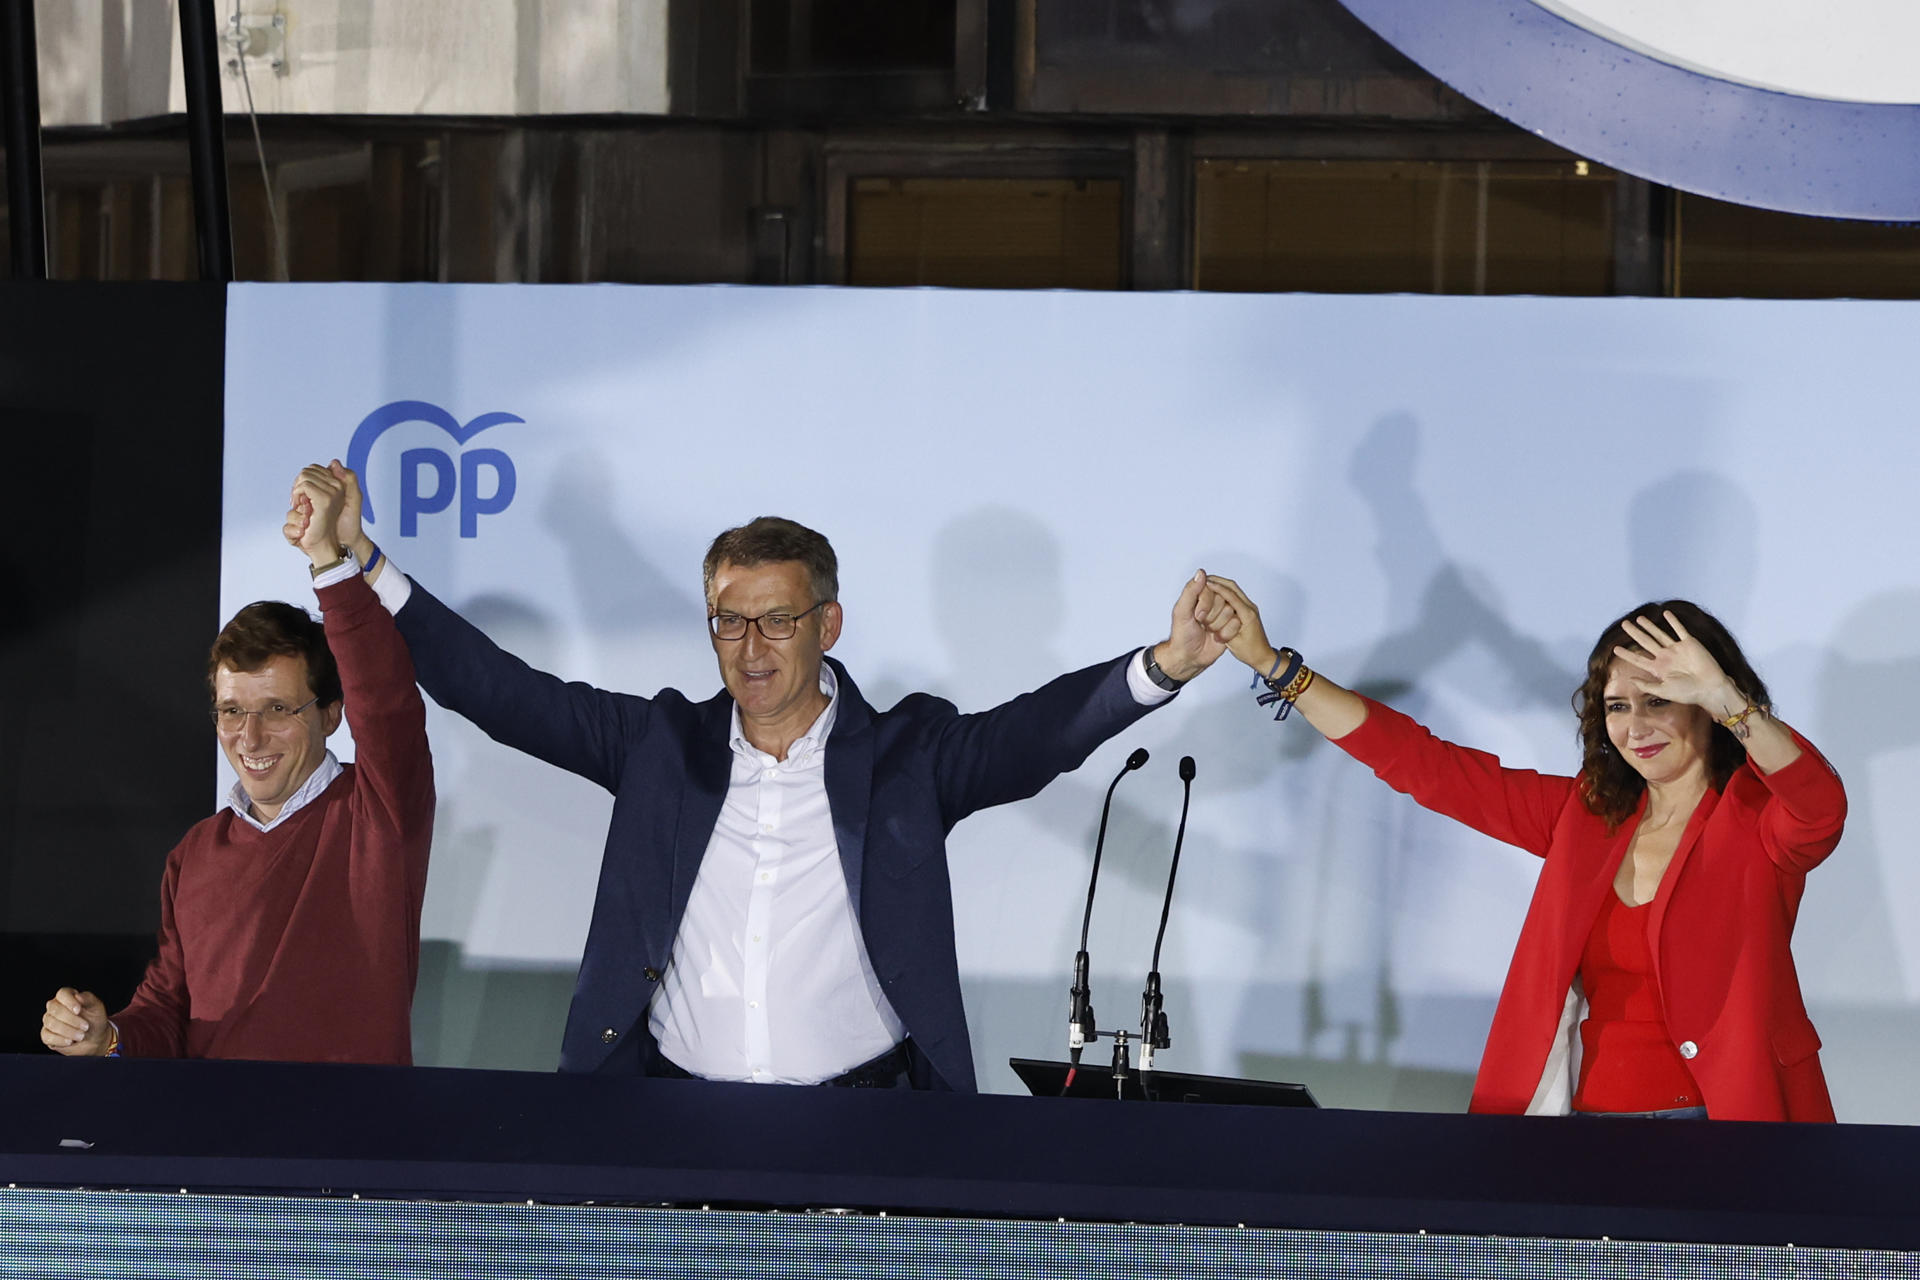 España certificó el giro a la derecha tras el triunfo conservador en los comicios locales